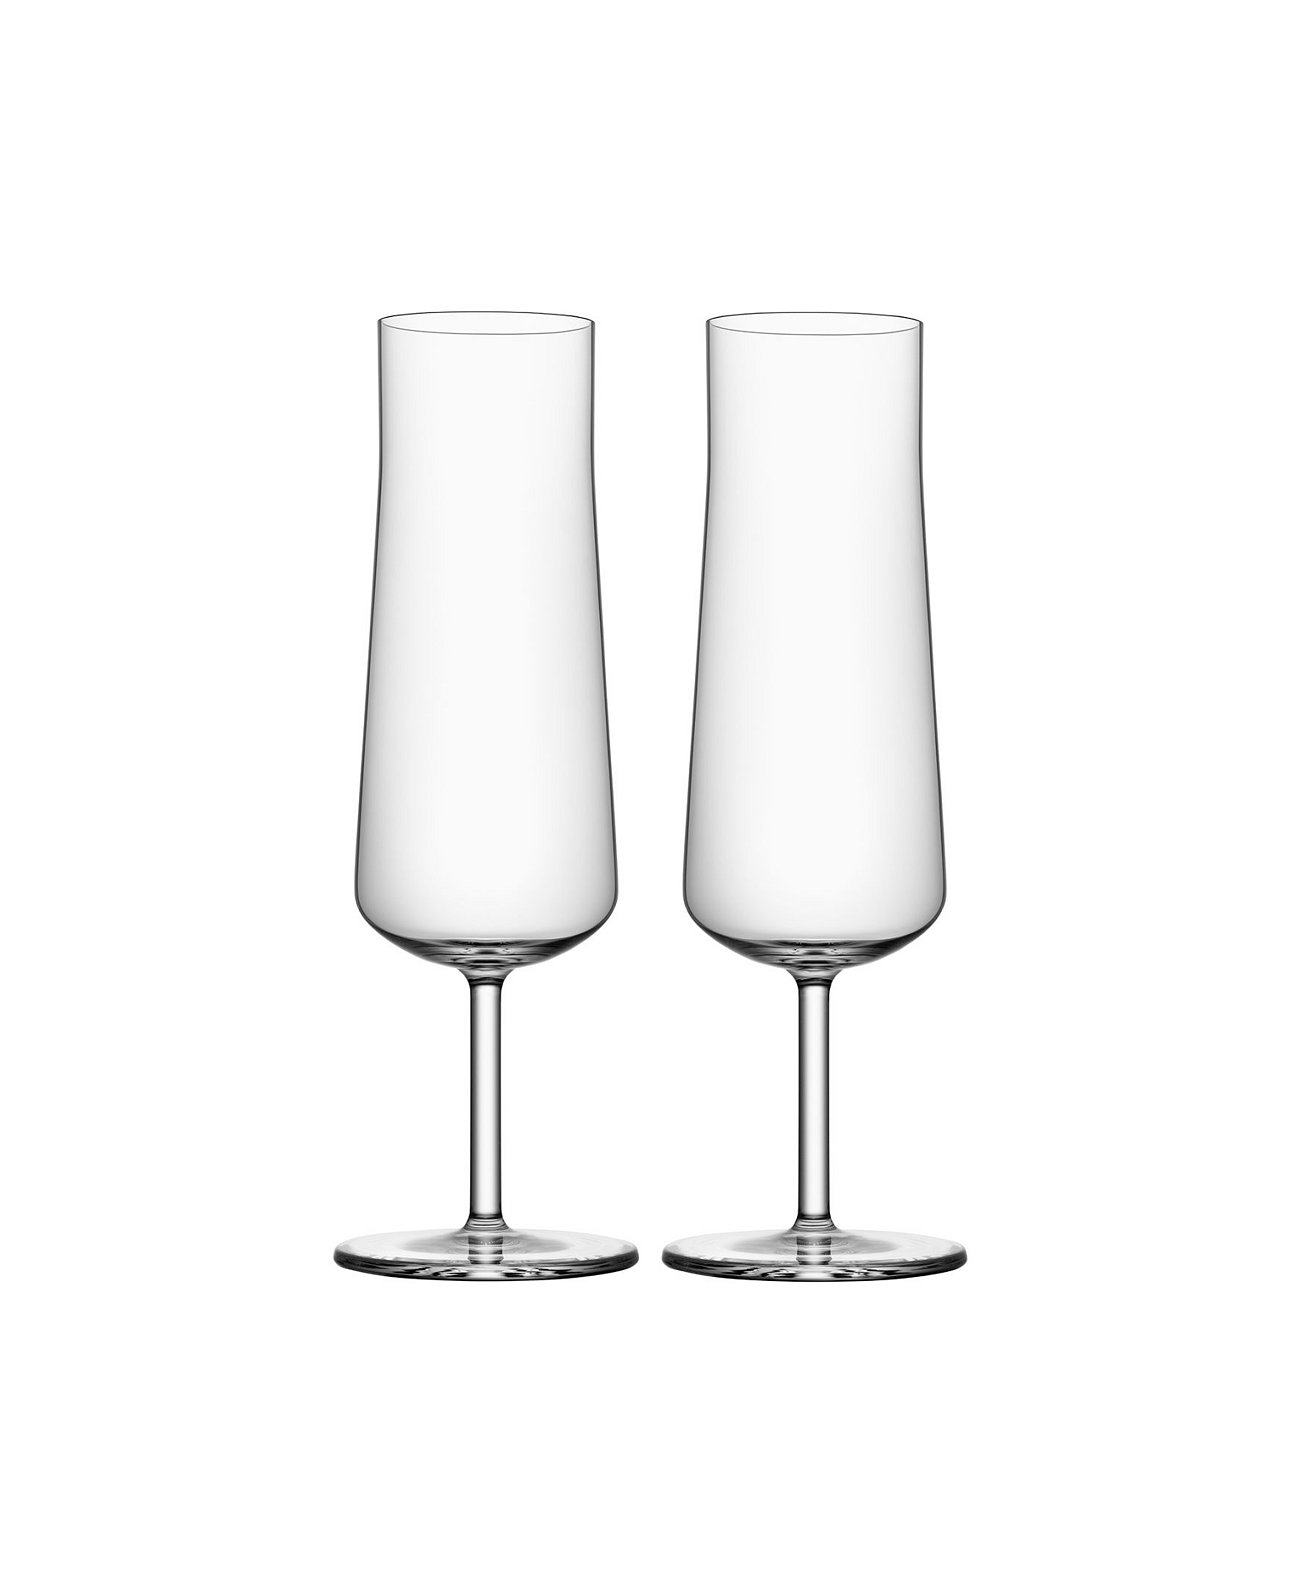 Неформальный набор бокалов для шампанского, 2 шт. Orrefors